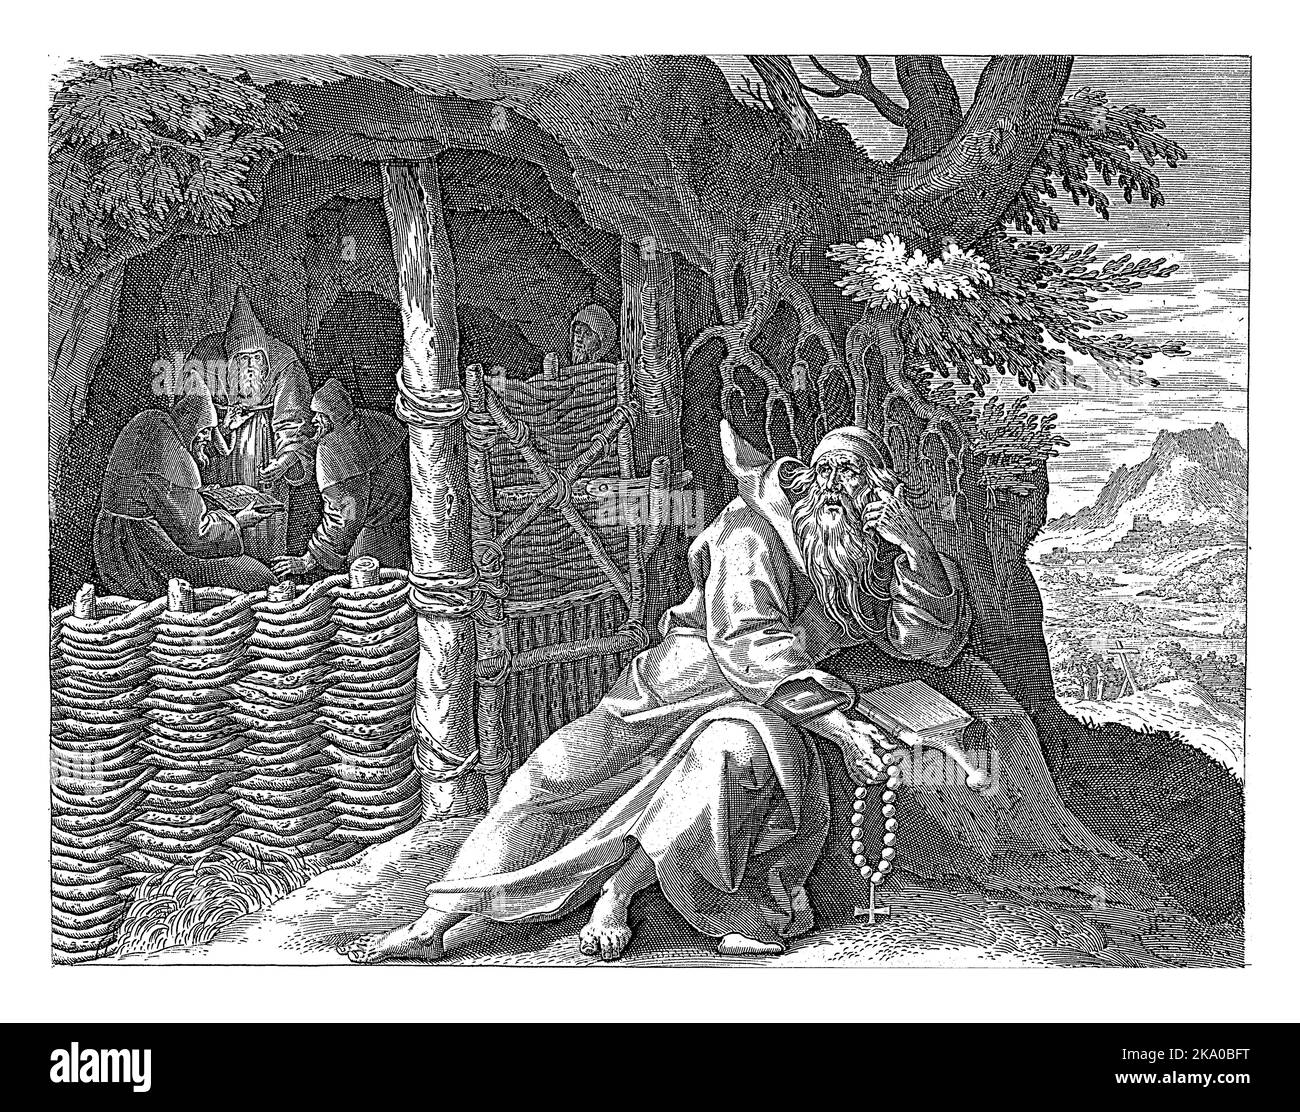 Il San Spiridon di Cipro di fronte a una grotta nel deserto. Sta mentendo contro una roccia e sta leggendo una bibbia. Nella grotta, tre monaci stanno leggendo fr Foto Stock